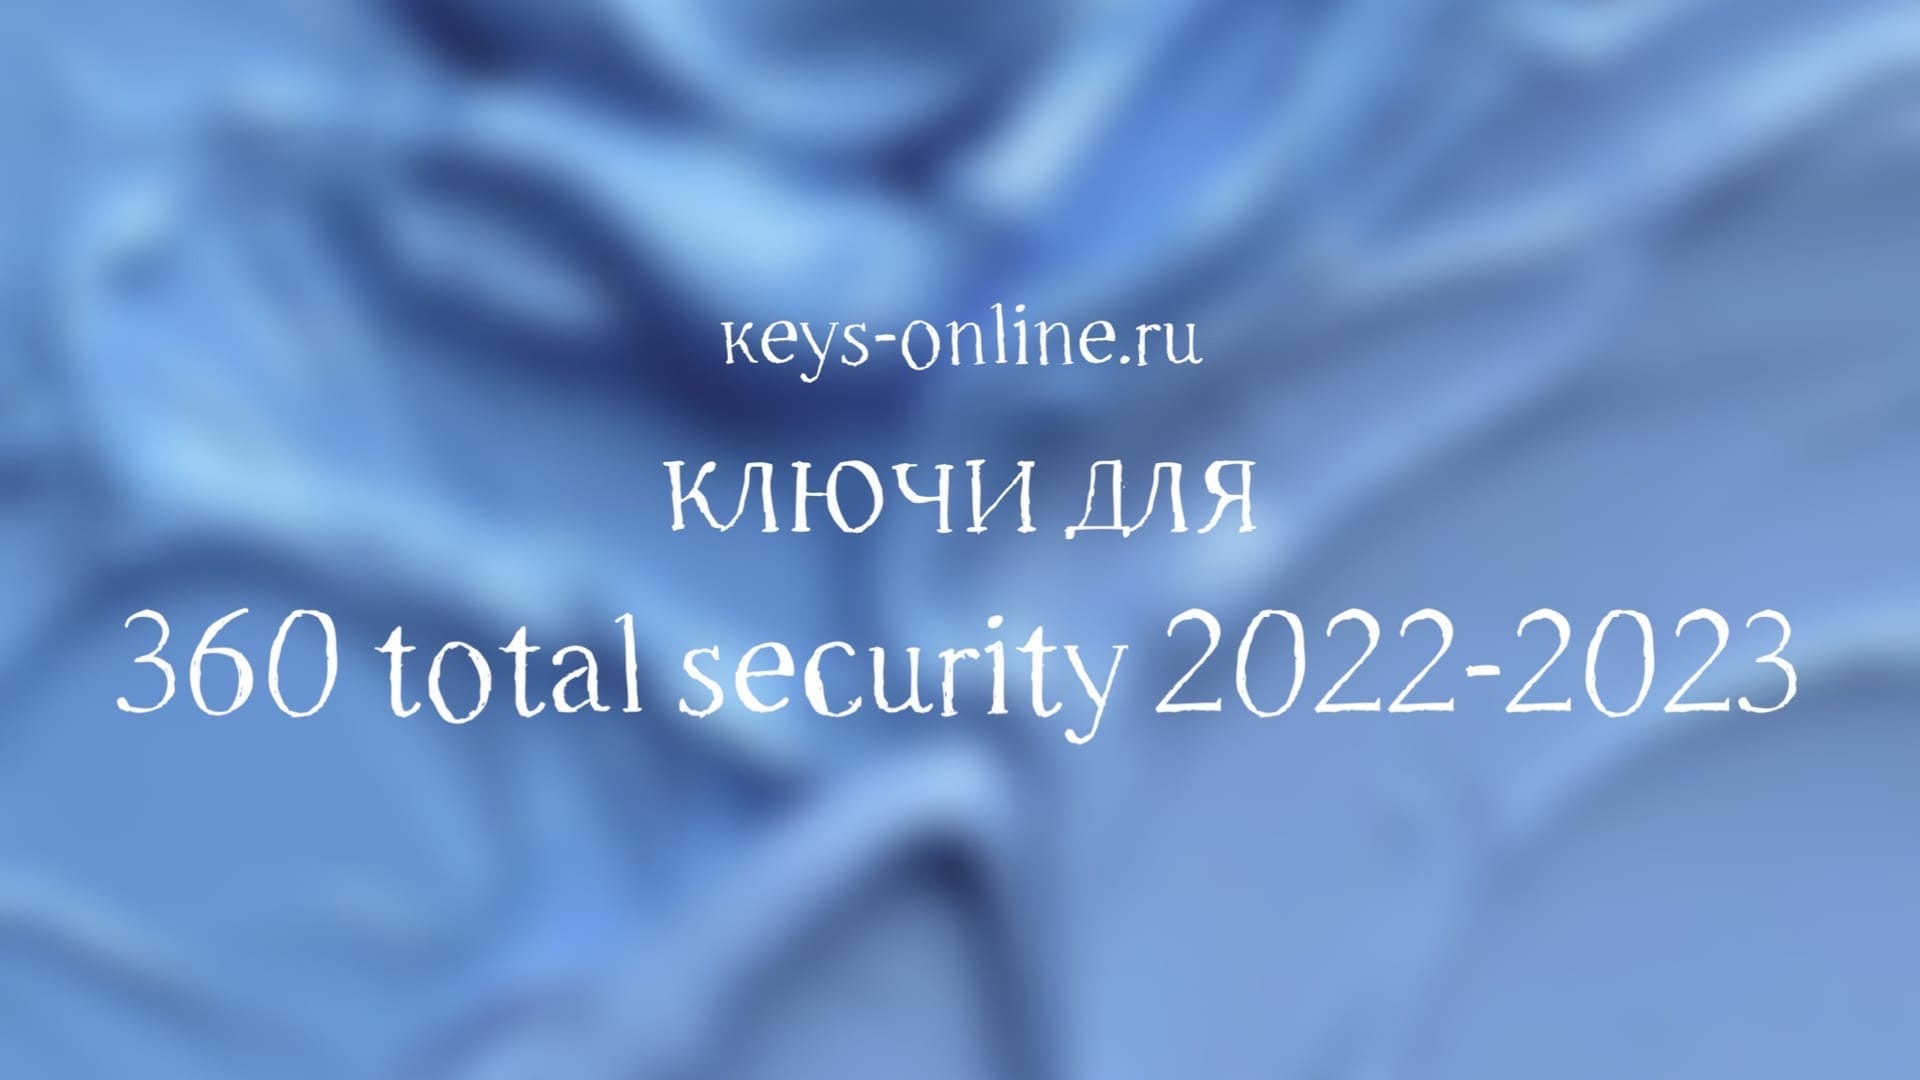 Ключи для 360 total security 2022 — 2023